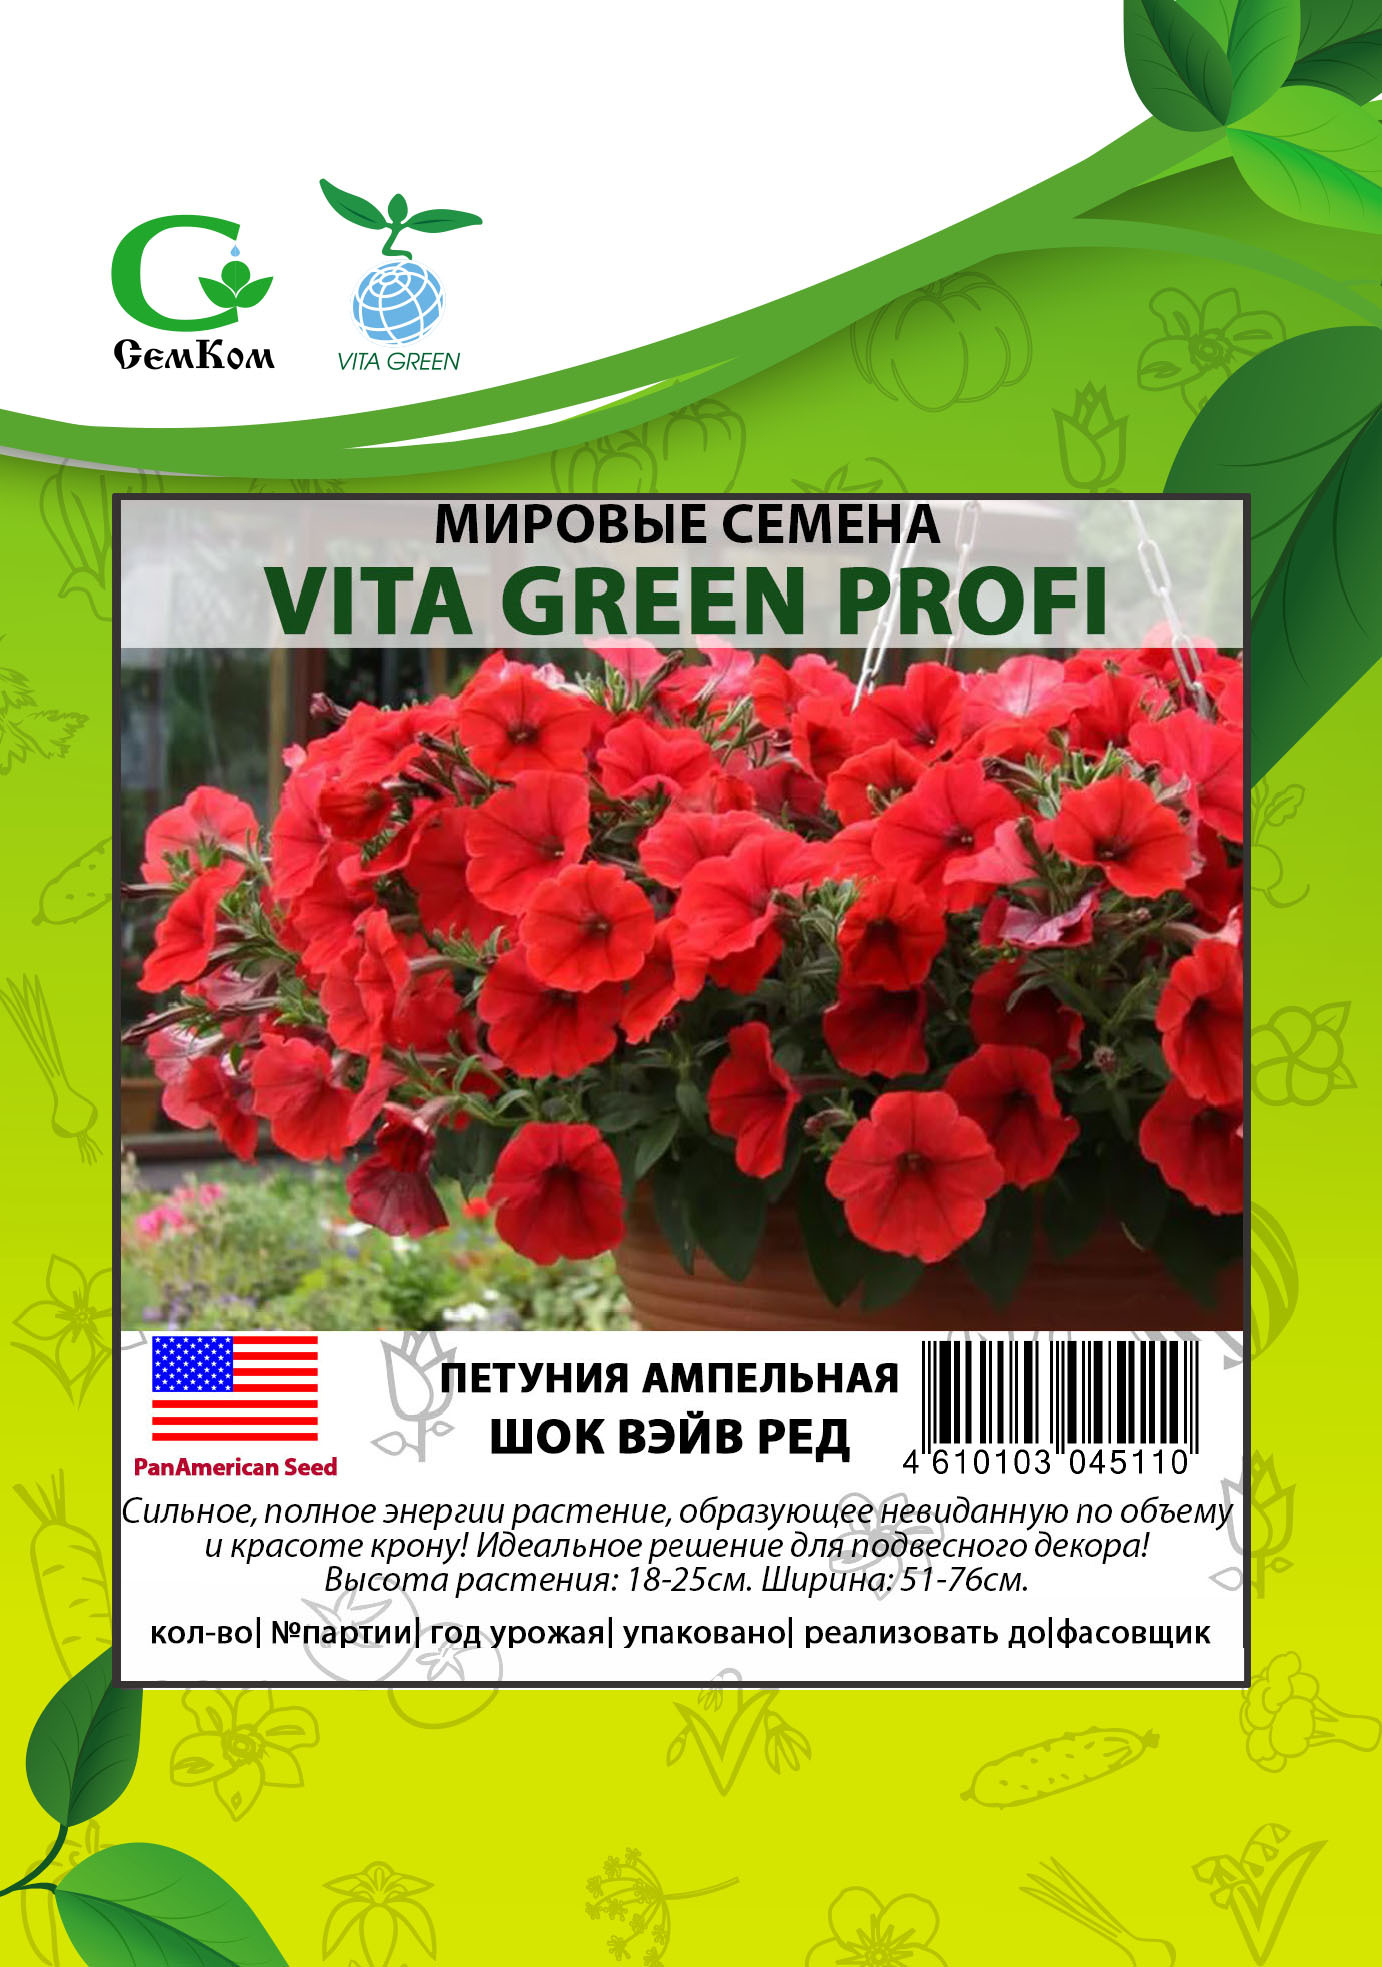 Купить семена садовых цветов в Алматы - Магазин 